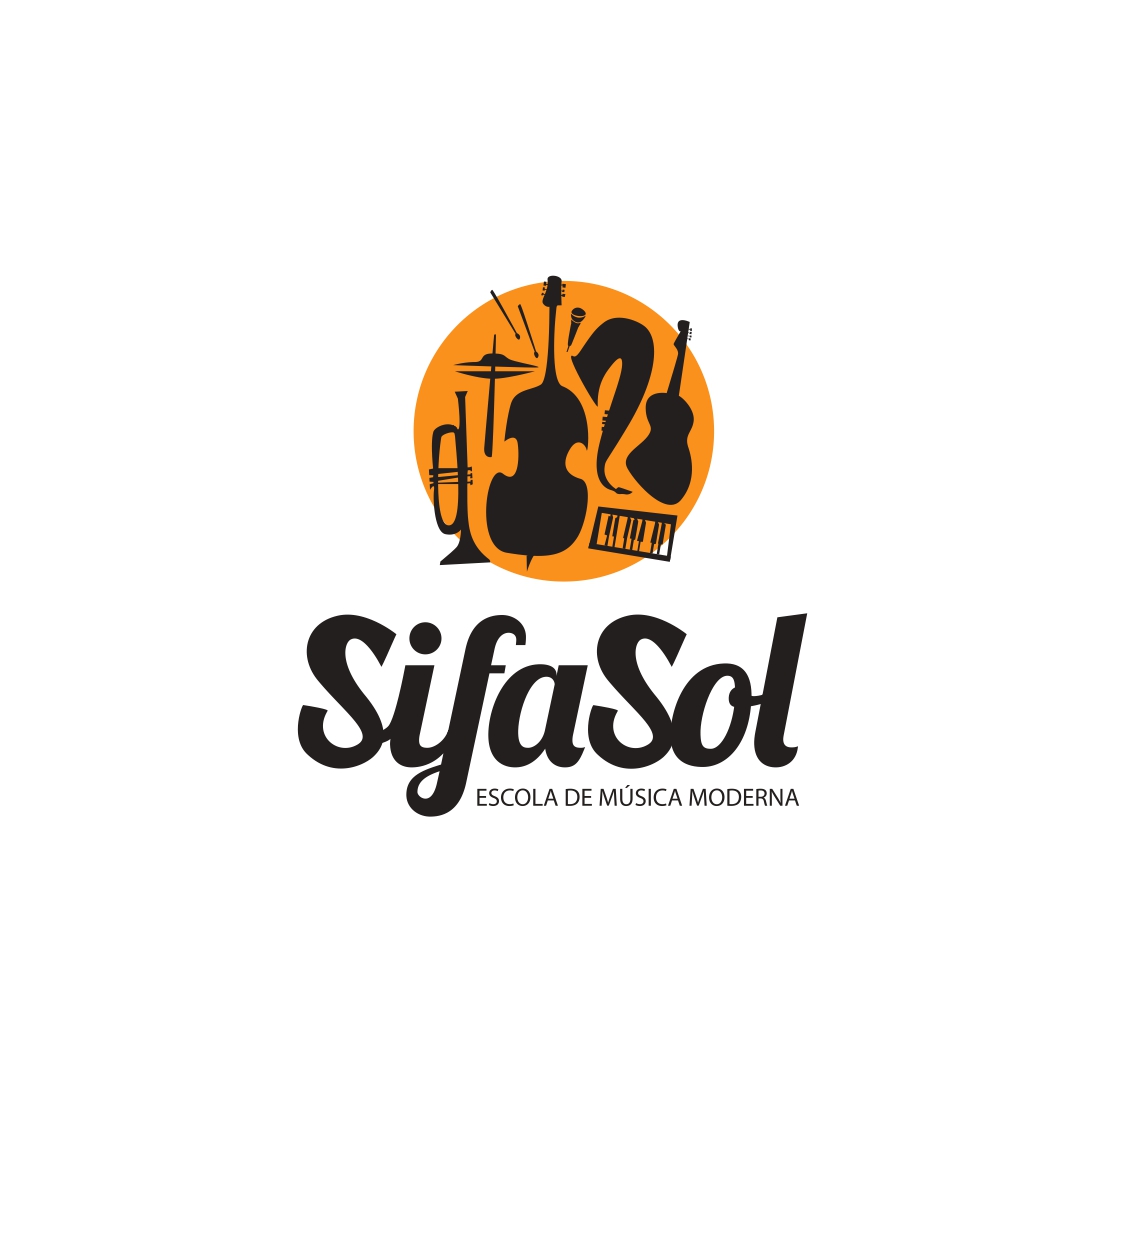 Association SiFaSol